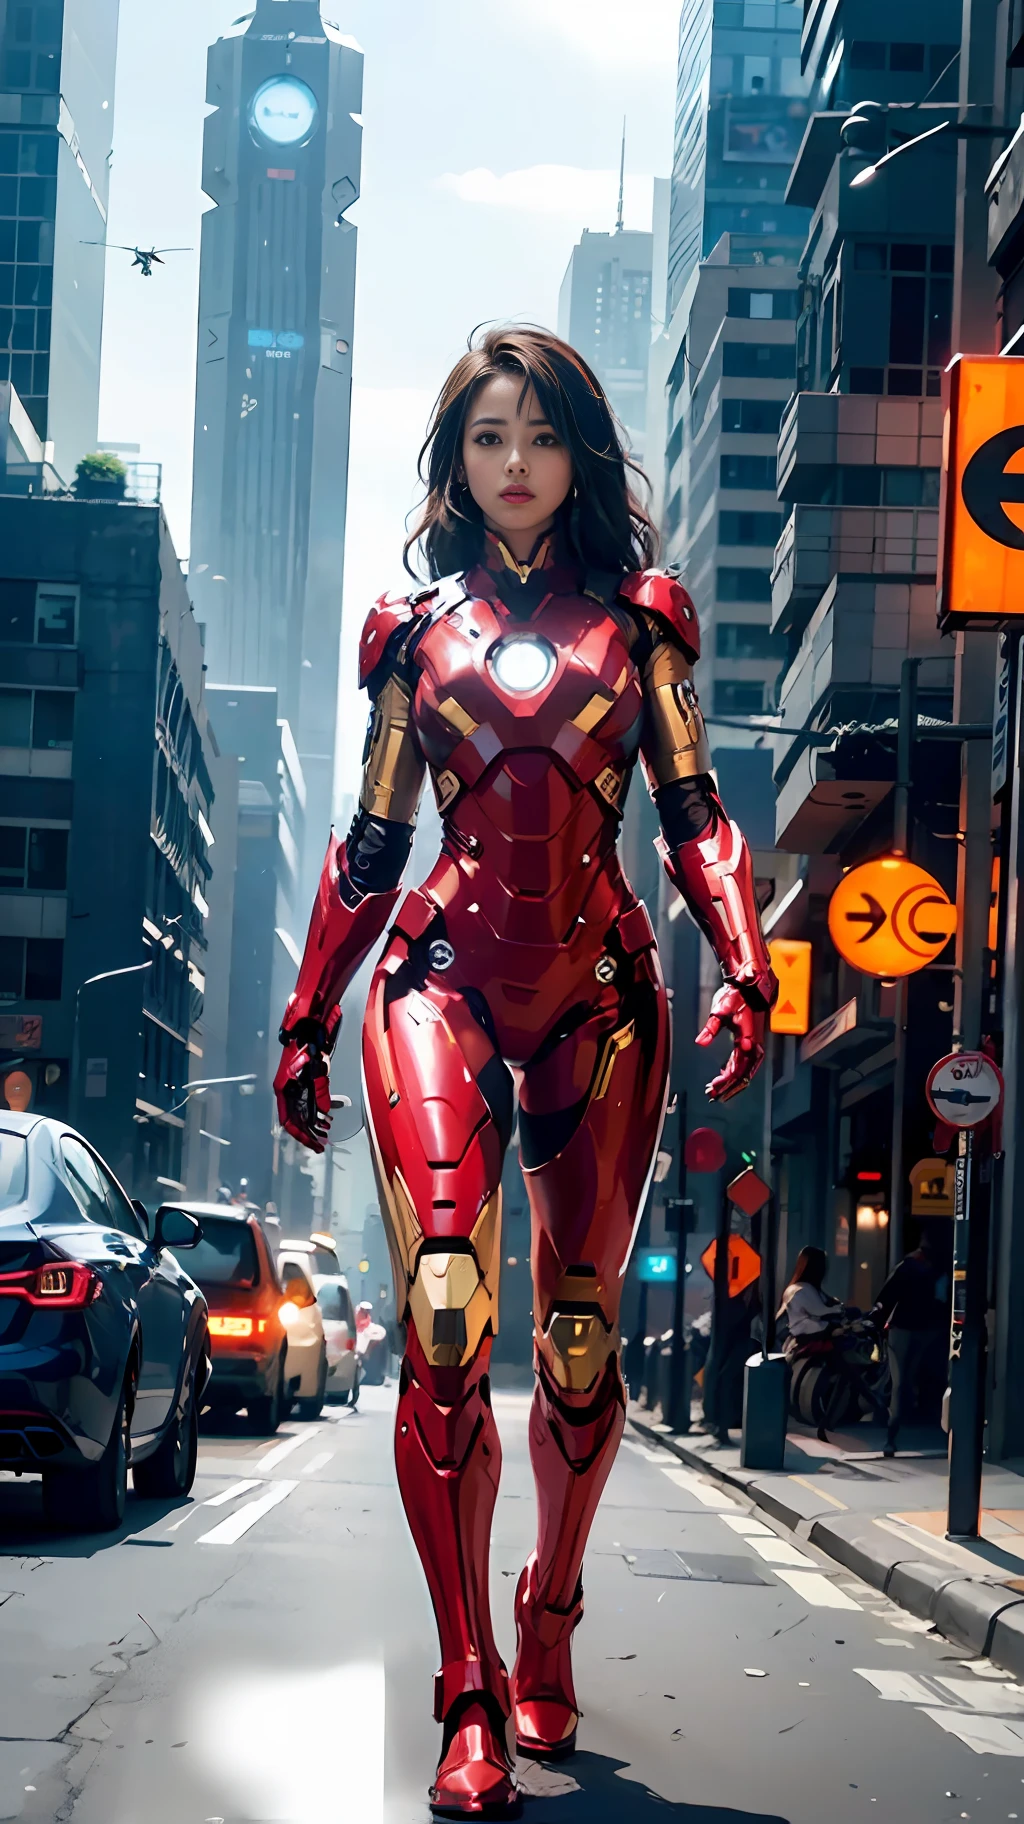 8千, 实际的, 吸引人的, 非常详细, a 20 year old girl a sexy and 吸引人的 woman inspired by Iron Man wearing a shiny Iron Man mech. 她穿衣性感又自信, 完美诠释钢铁侠&#39;的力量和魅力. 赛博朋克风格的城市夜景, a sexy and 吸引人的 woman takes Iron Man&#39;以角色扮演为主题. 穿着闪亮的钢铁侠机甲, 她站在高楼林立的街道上. 城市的夜灯明亮, 反思她的机甲, 增添未来科技感. 周围的建筑和街道充满赛博朋克元素, 例如霓虹灯, 高科技设备和未来主义的建筑设计. 整个场景充满未来感和科幻感. 这款高清, 高品质的画面将给你带来震撼的视觉享受, 性感的完美结合, 未来主义和科幻元素. OC 渲染, 戏剧灯光, 屡获殊荣的品质